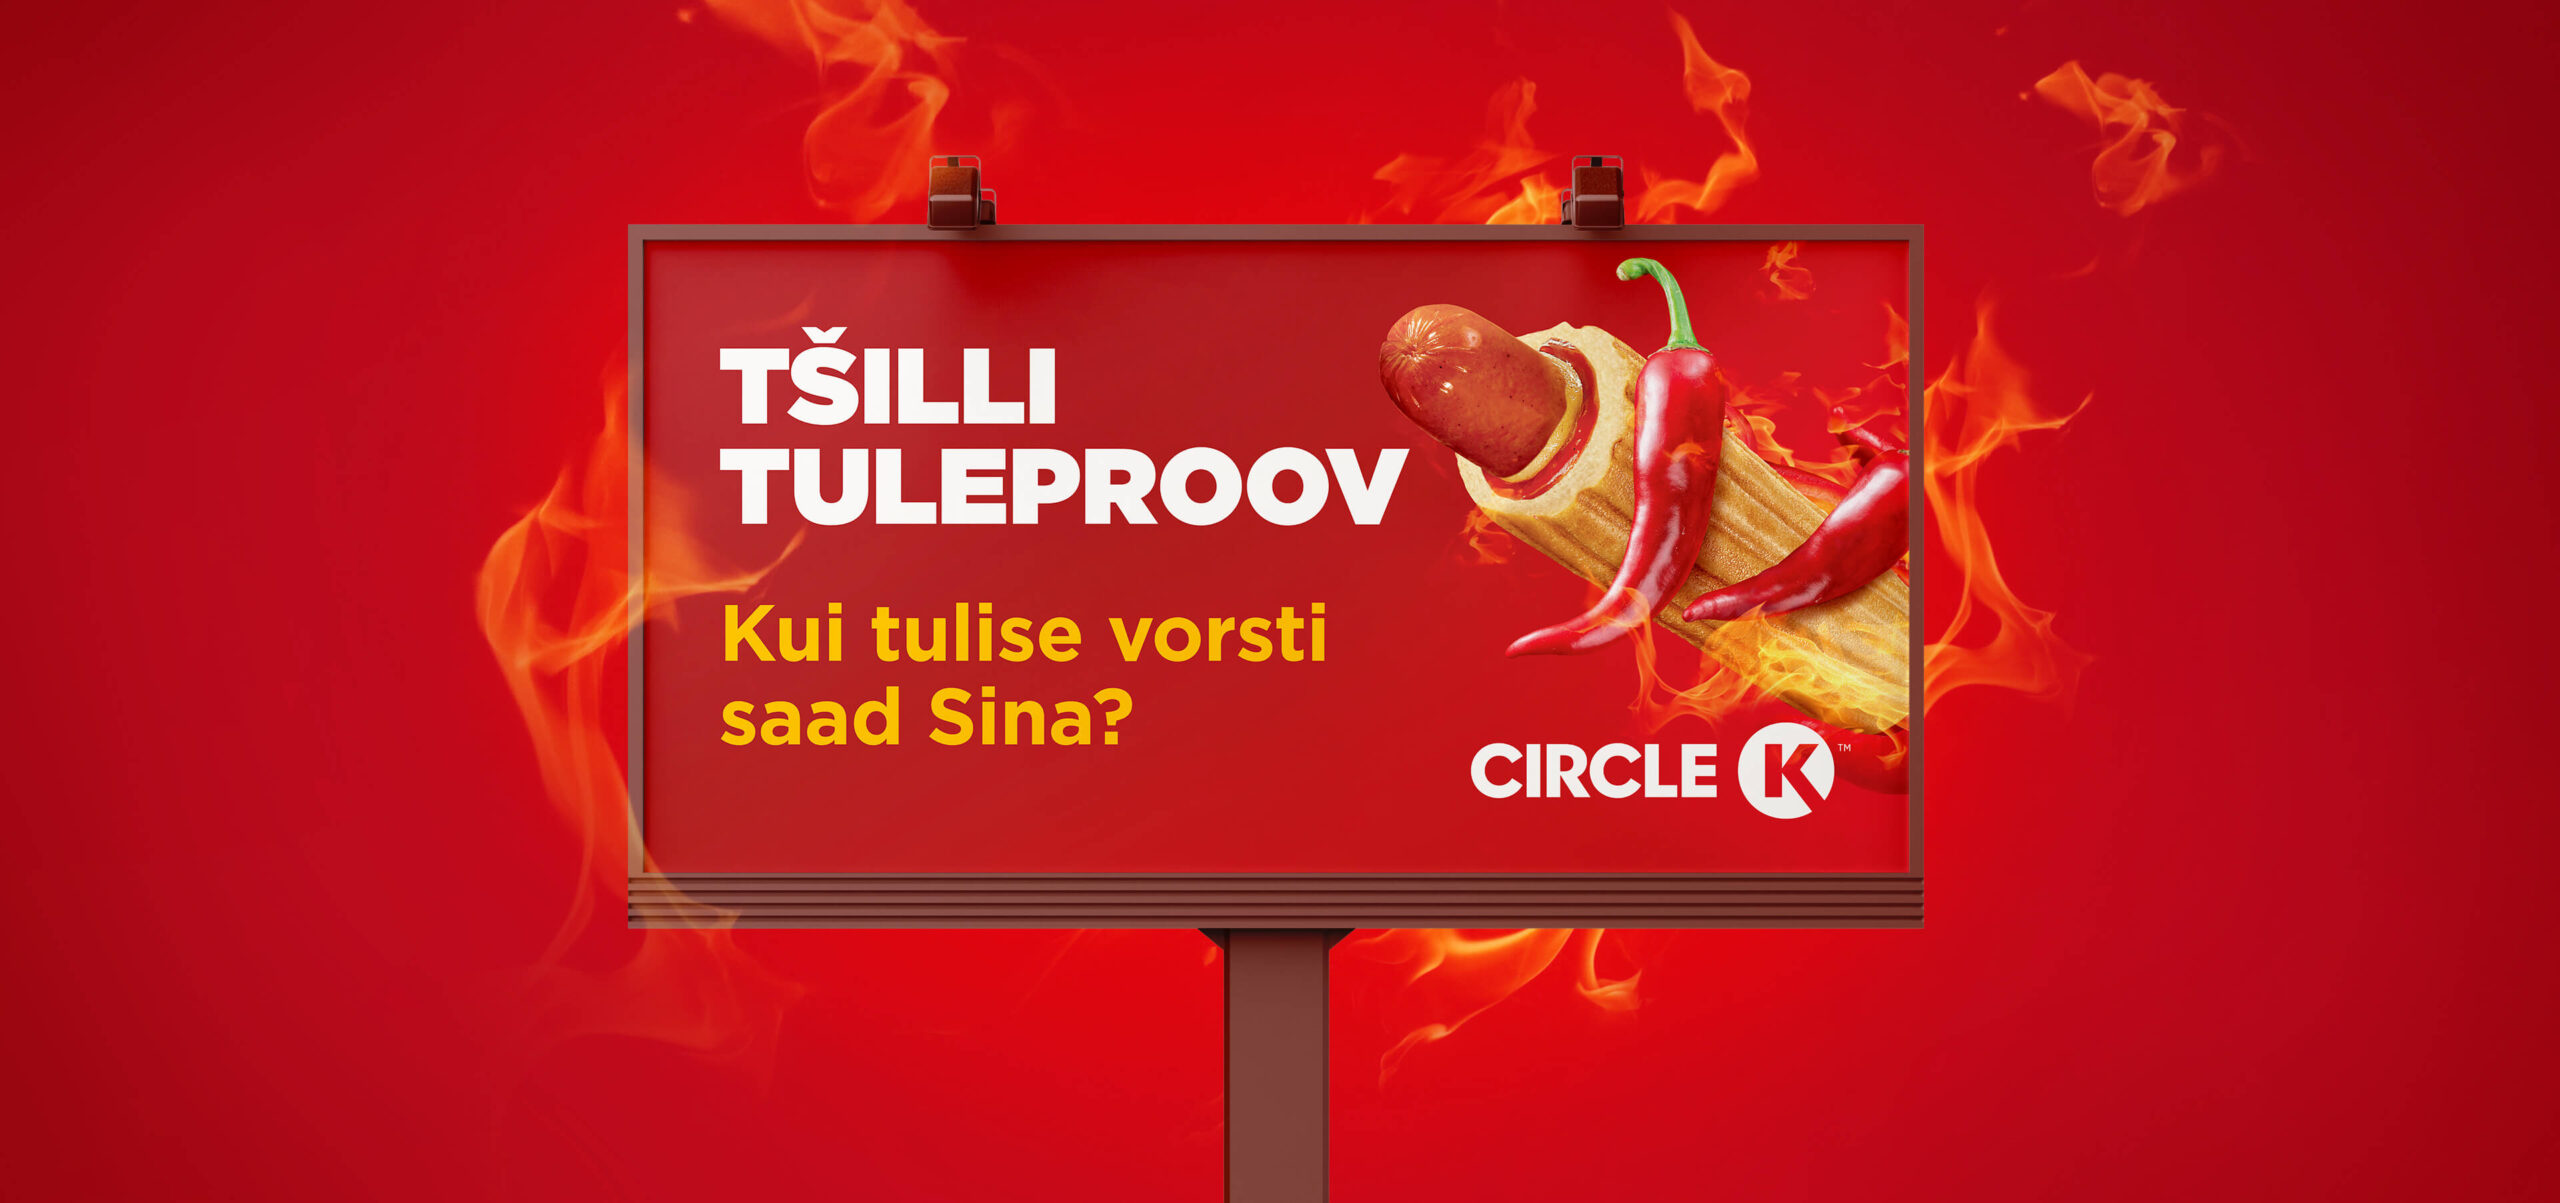 Circle K mänguline kampaania tšillivorstiga hot dogide promomiseks.